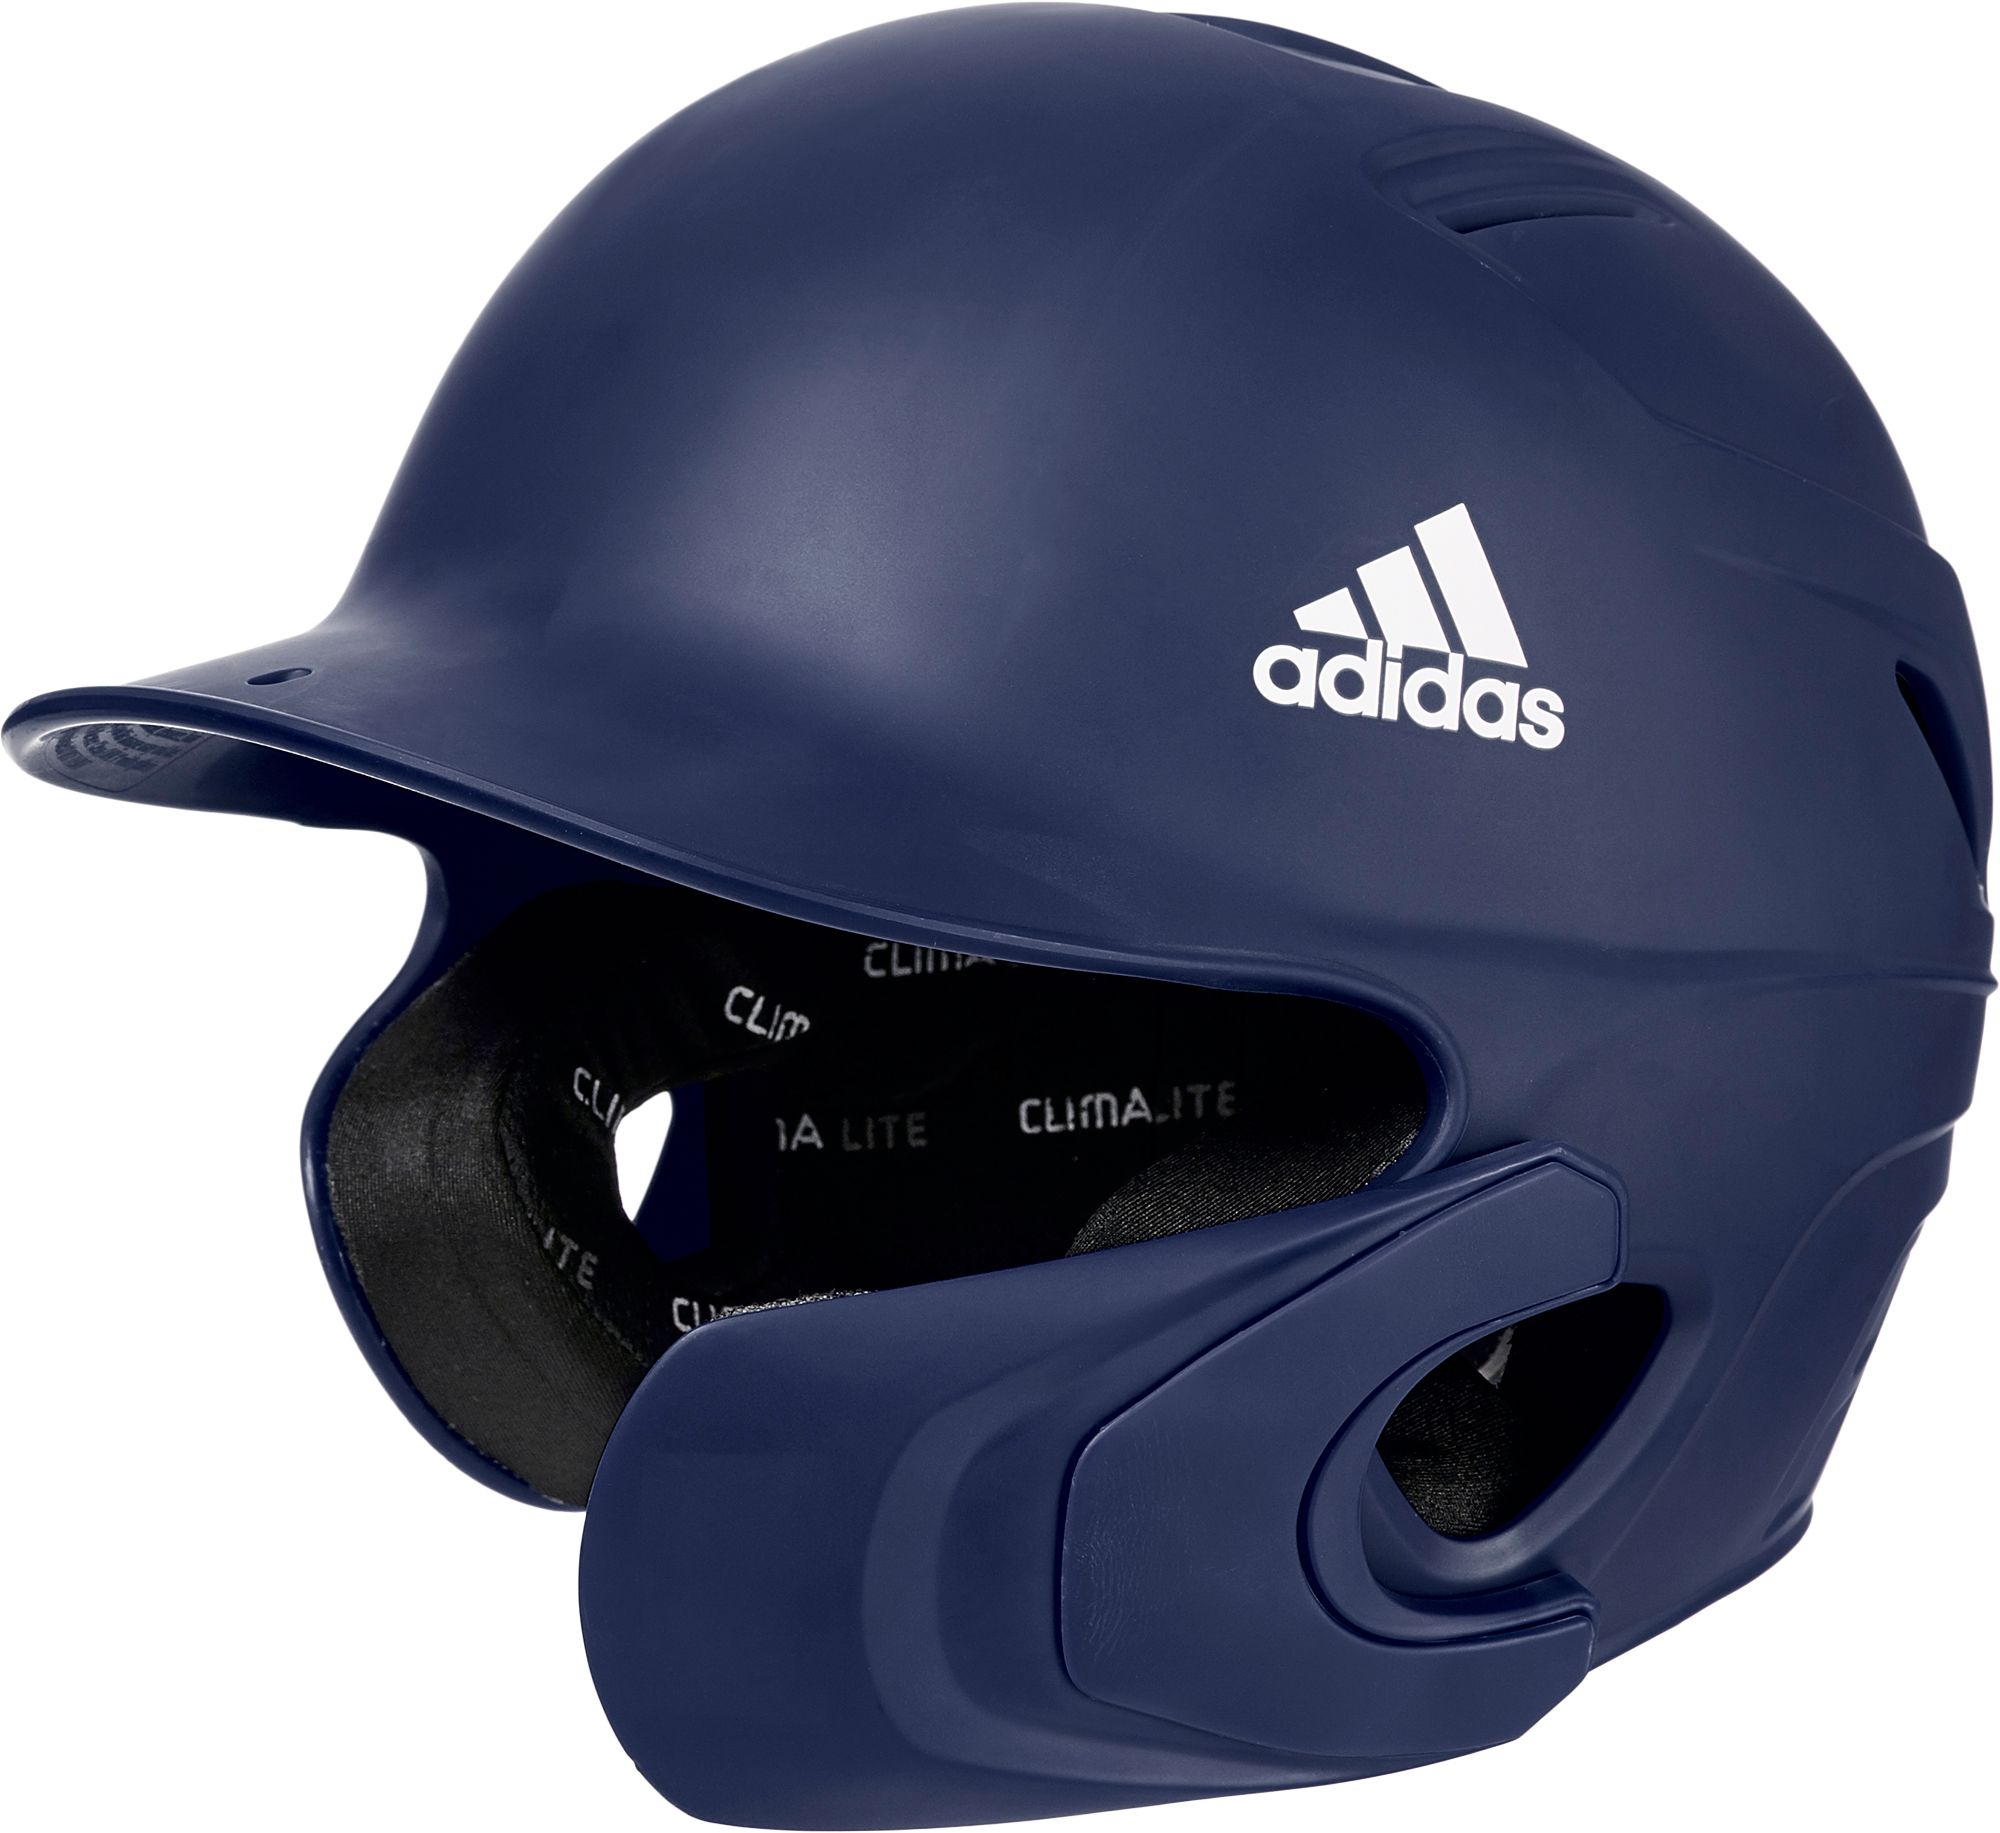 adidas youth batting helmet